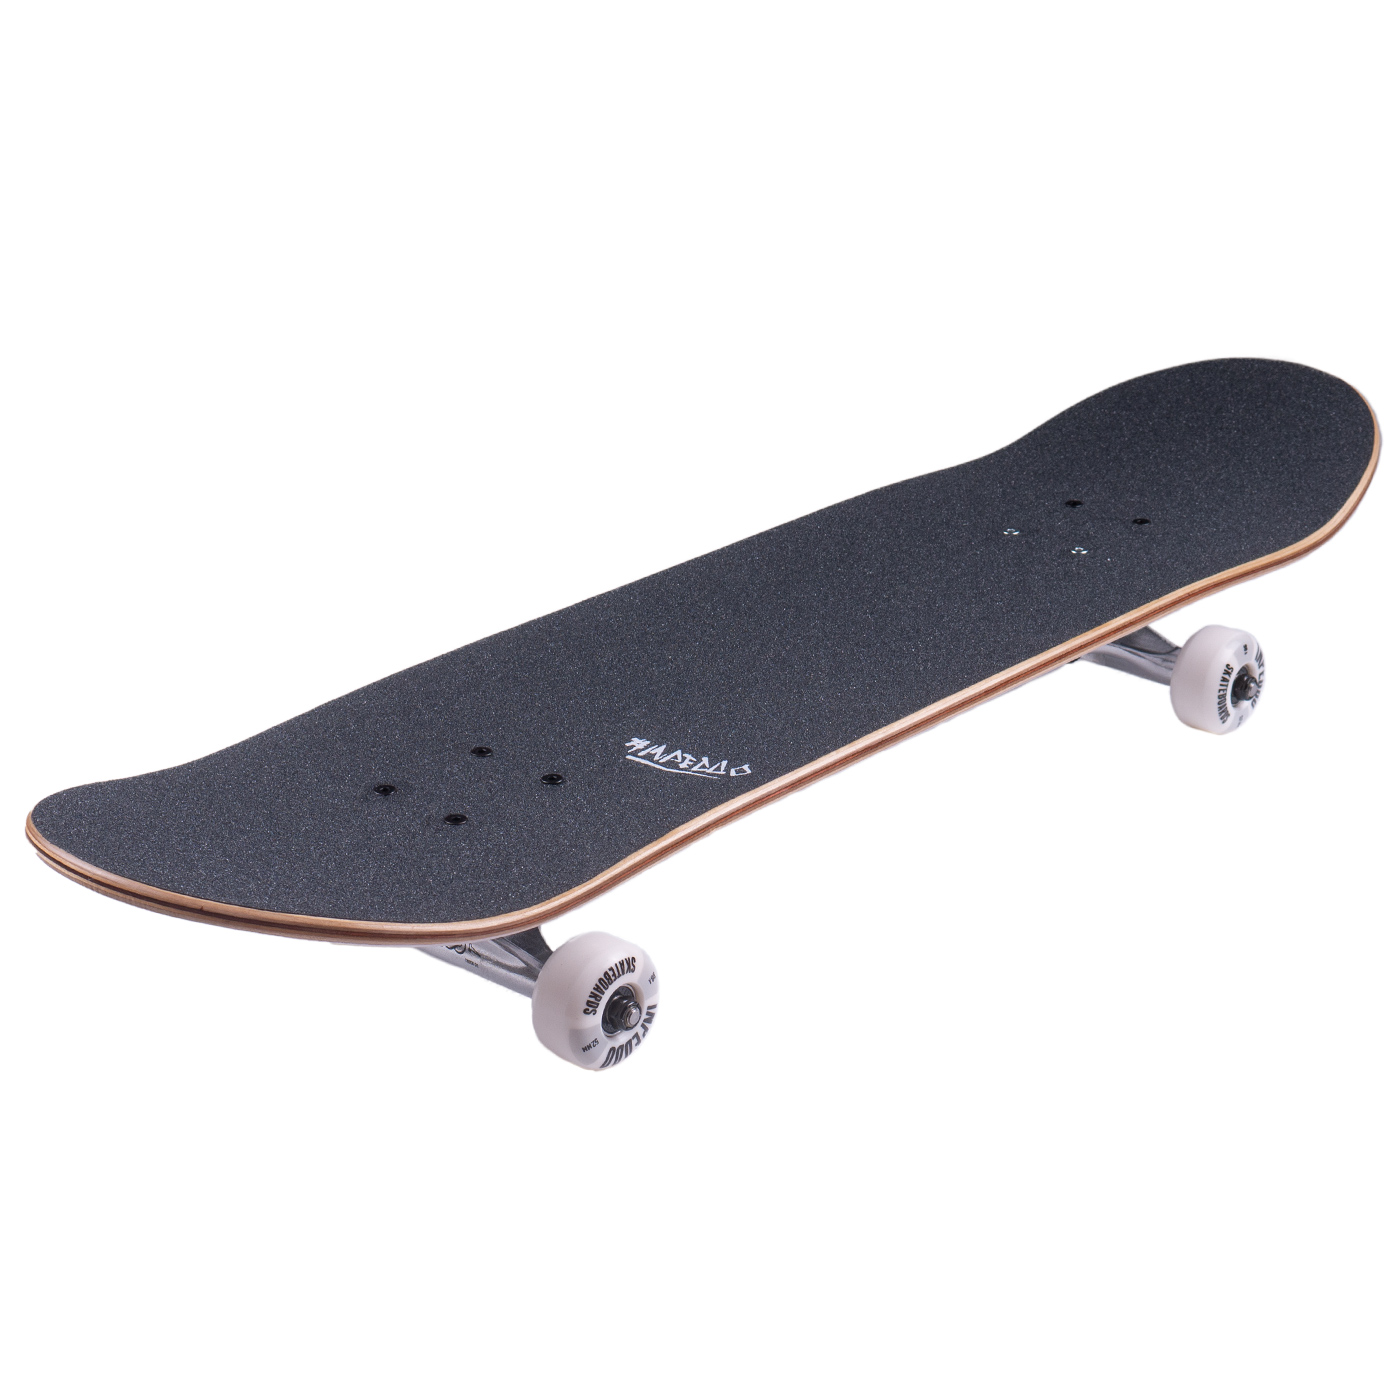 Inpeddo Skateboard Komplettboard Mountain Standard 7.875" (red)